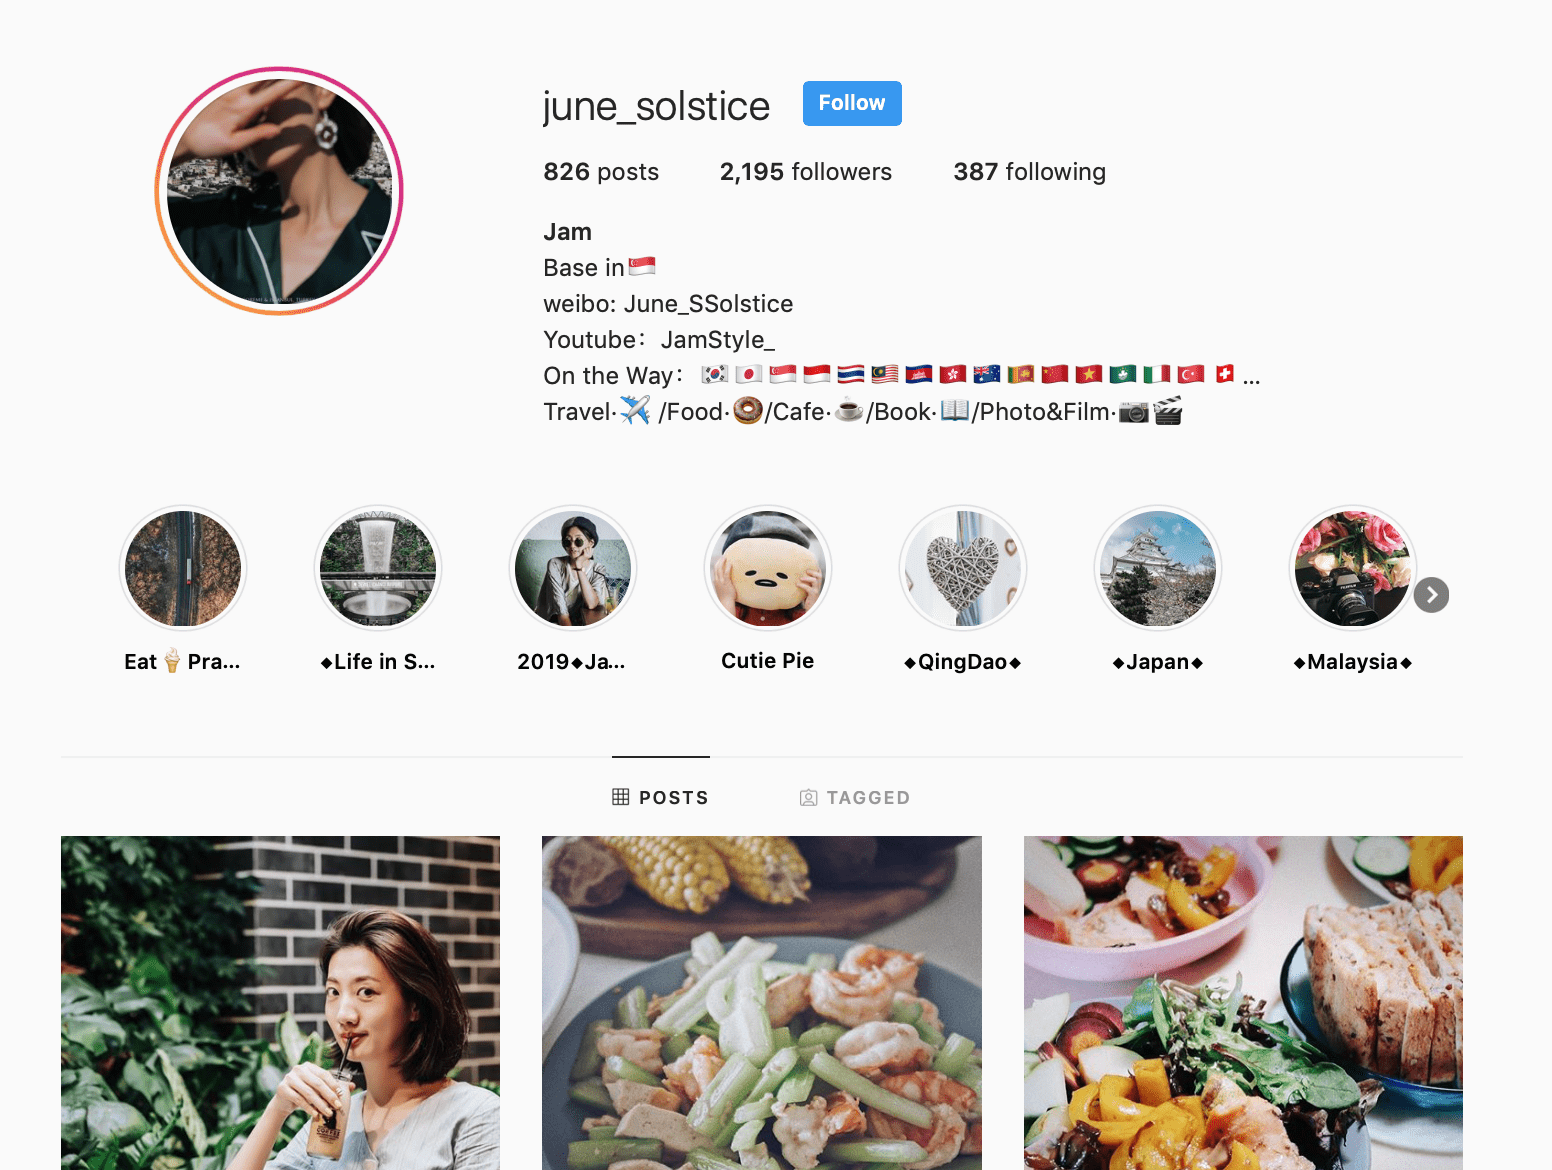 Screenshot of Instagram Micro-Influencer June Solstice